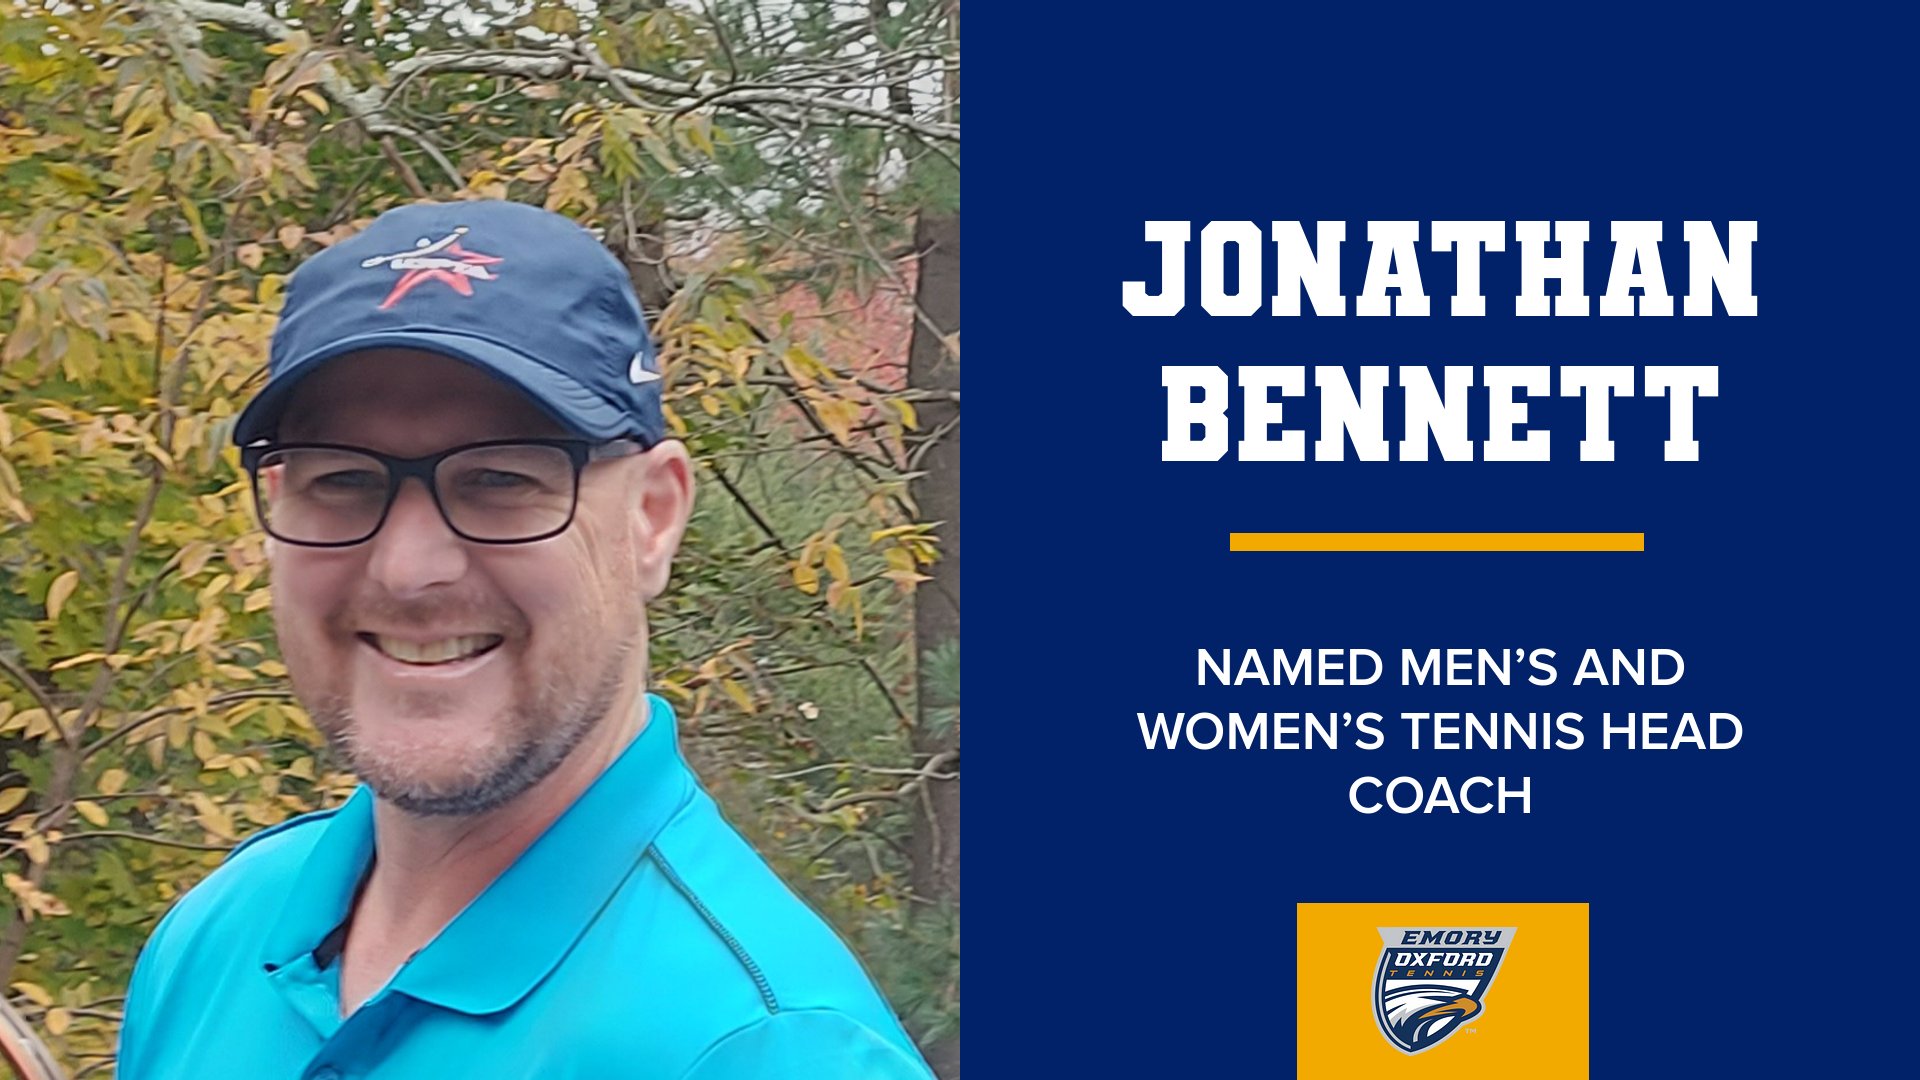 Jonathan Bennett named men's and women's tennis coach